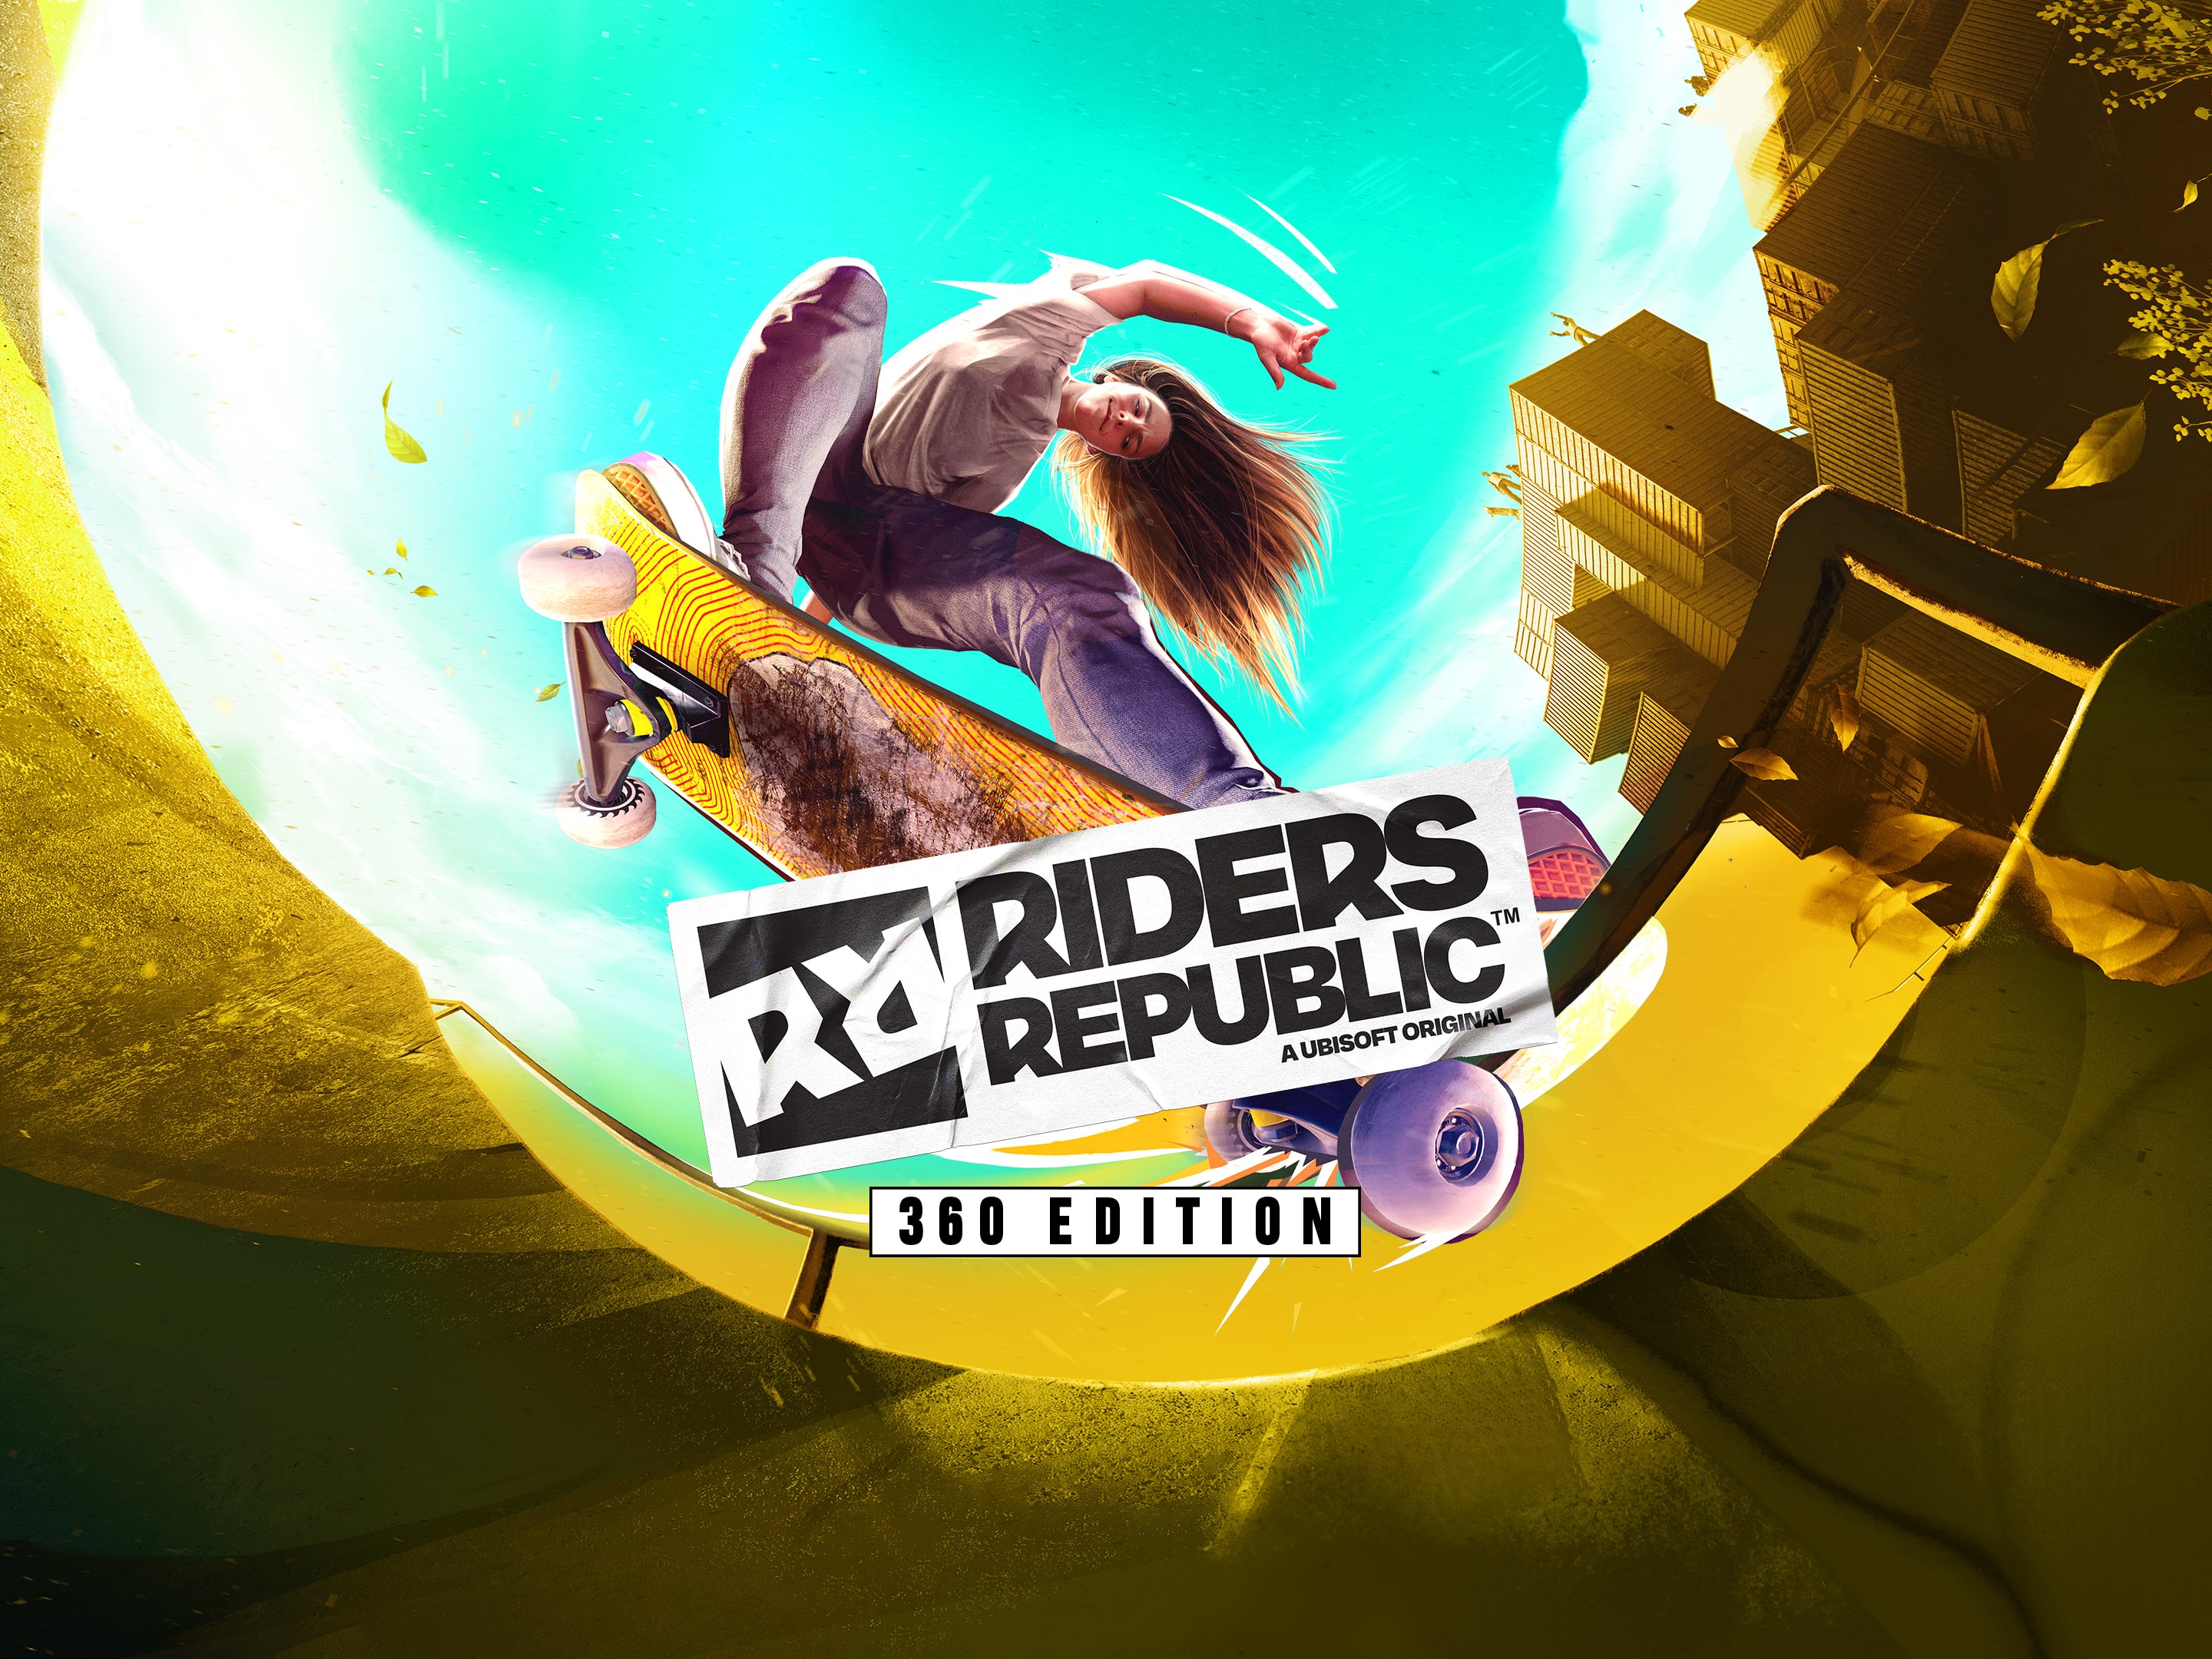 PS5 & Republic™ Riders PS4